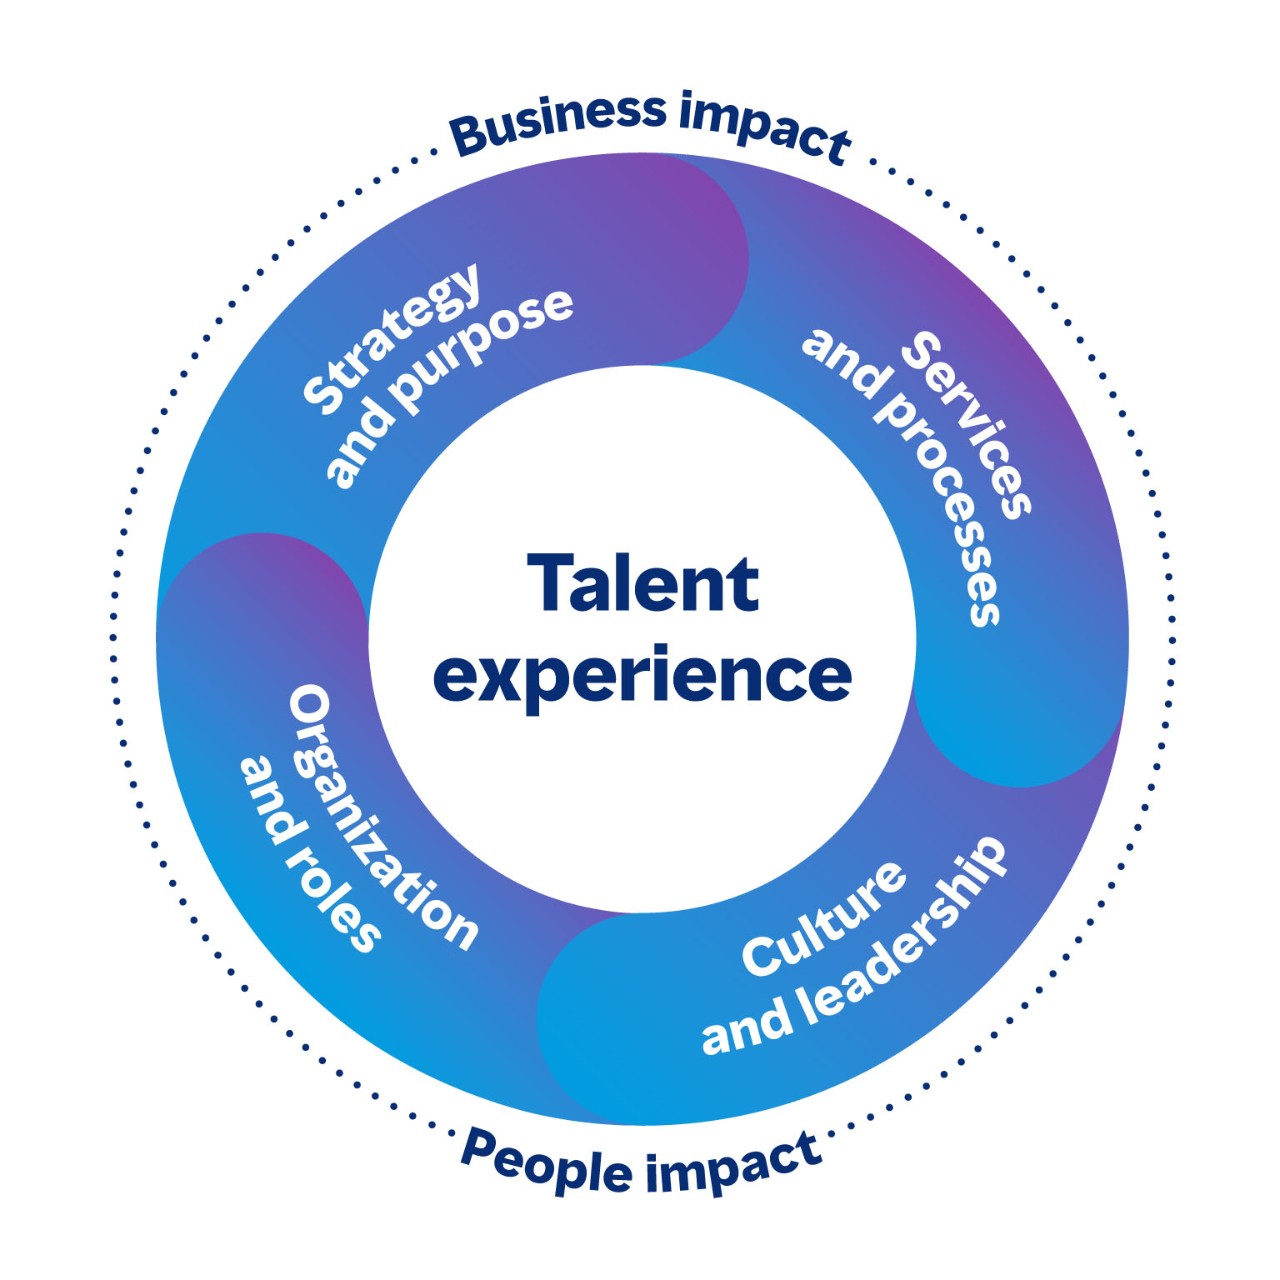 Imagen circular que muestra las áreas conectadas de la experiencia de talento que tienen un impacto tanto en el negocio como en las personas. Las cuatro áreas son: Estrategia y propósito, Servicios y procesos, Cultura y liderazgo, y Organización y funciones.